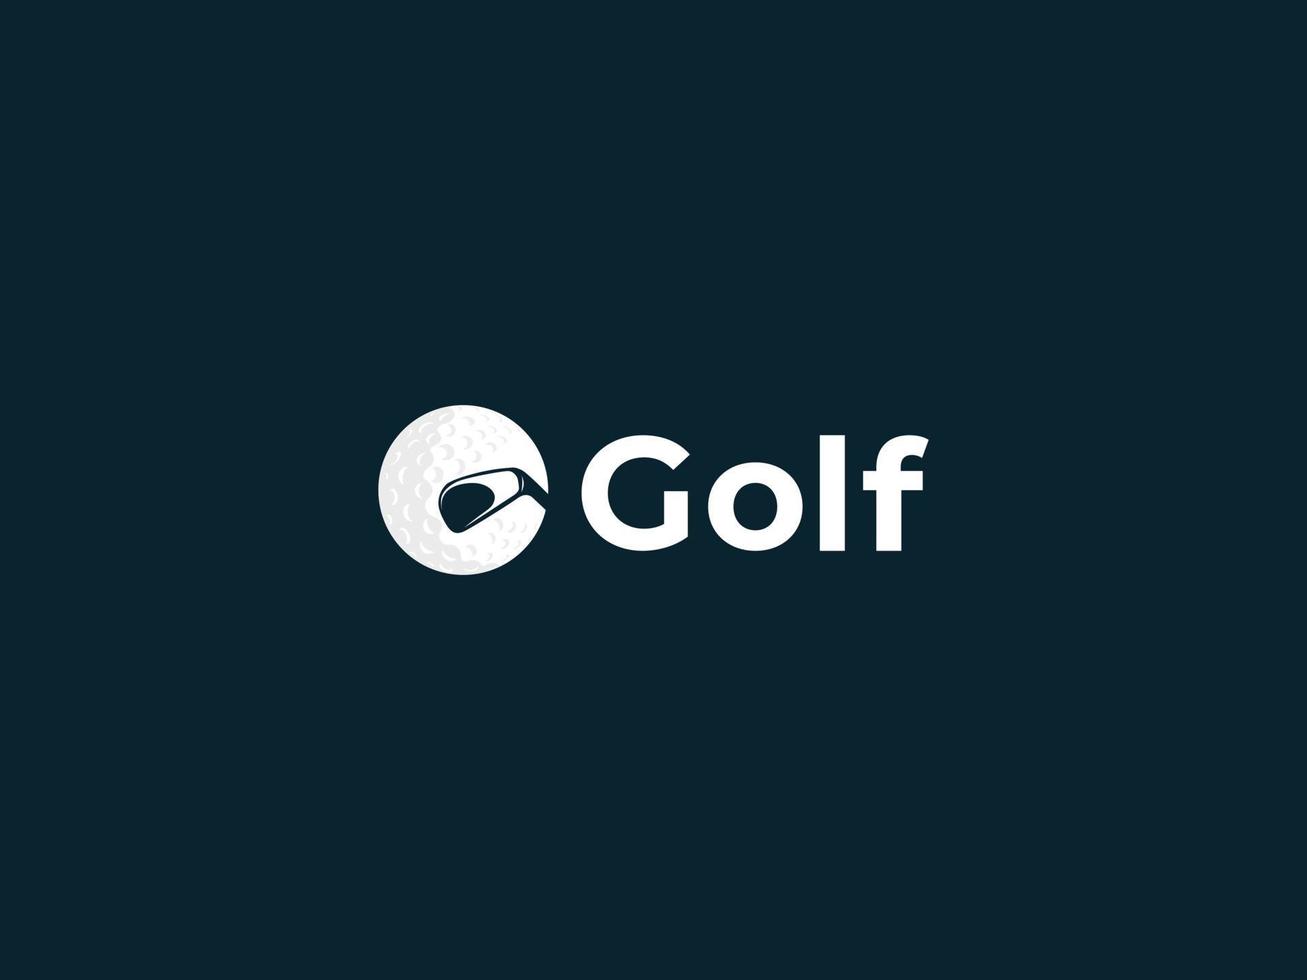 Buchstabe g mit Golfball und Fledermaus-Symbol-Logo-Design-Konzept pro Vektor